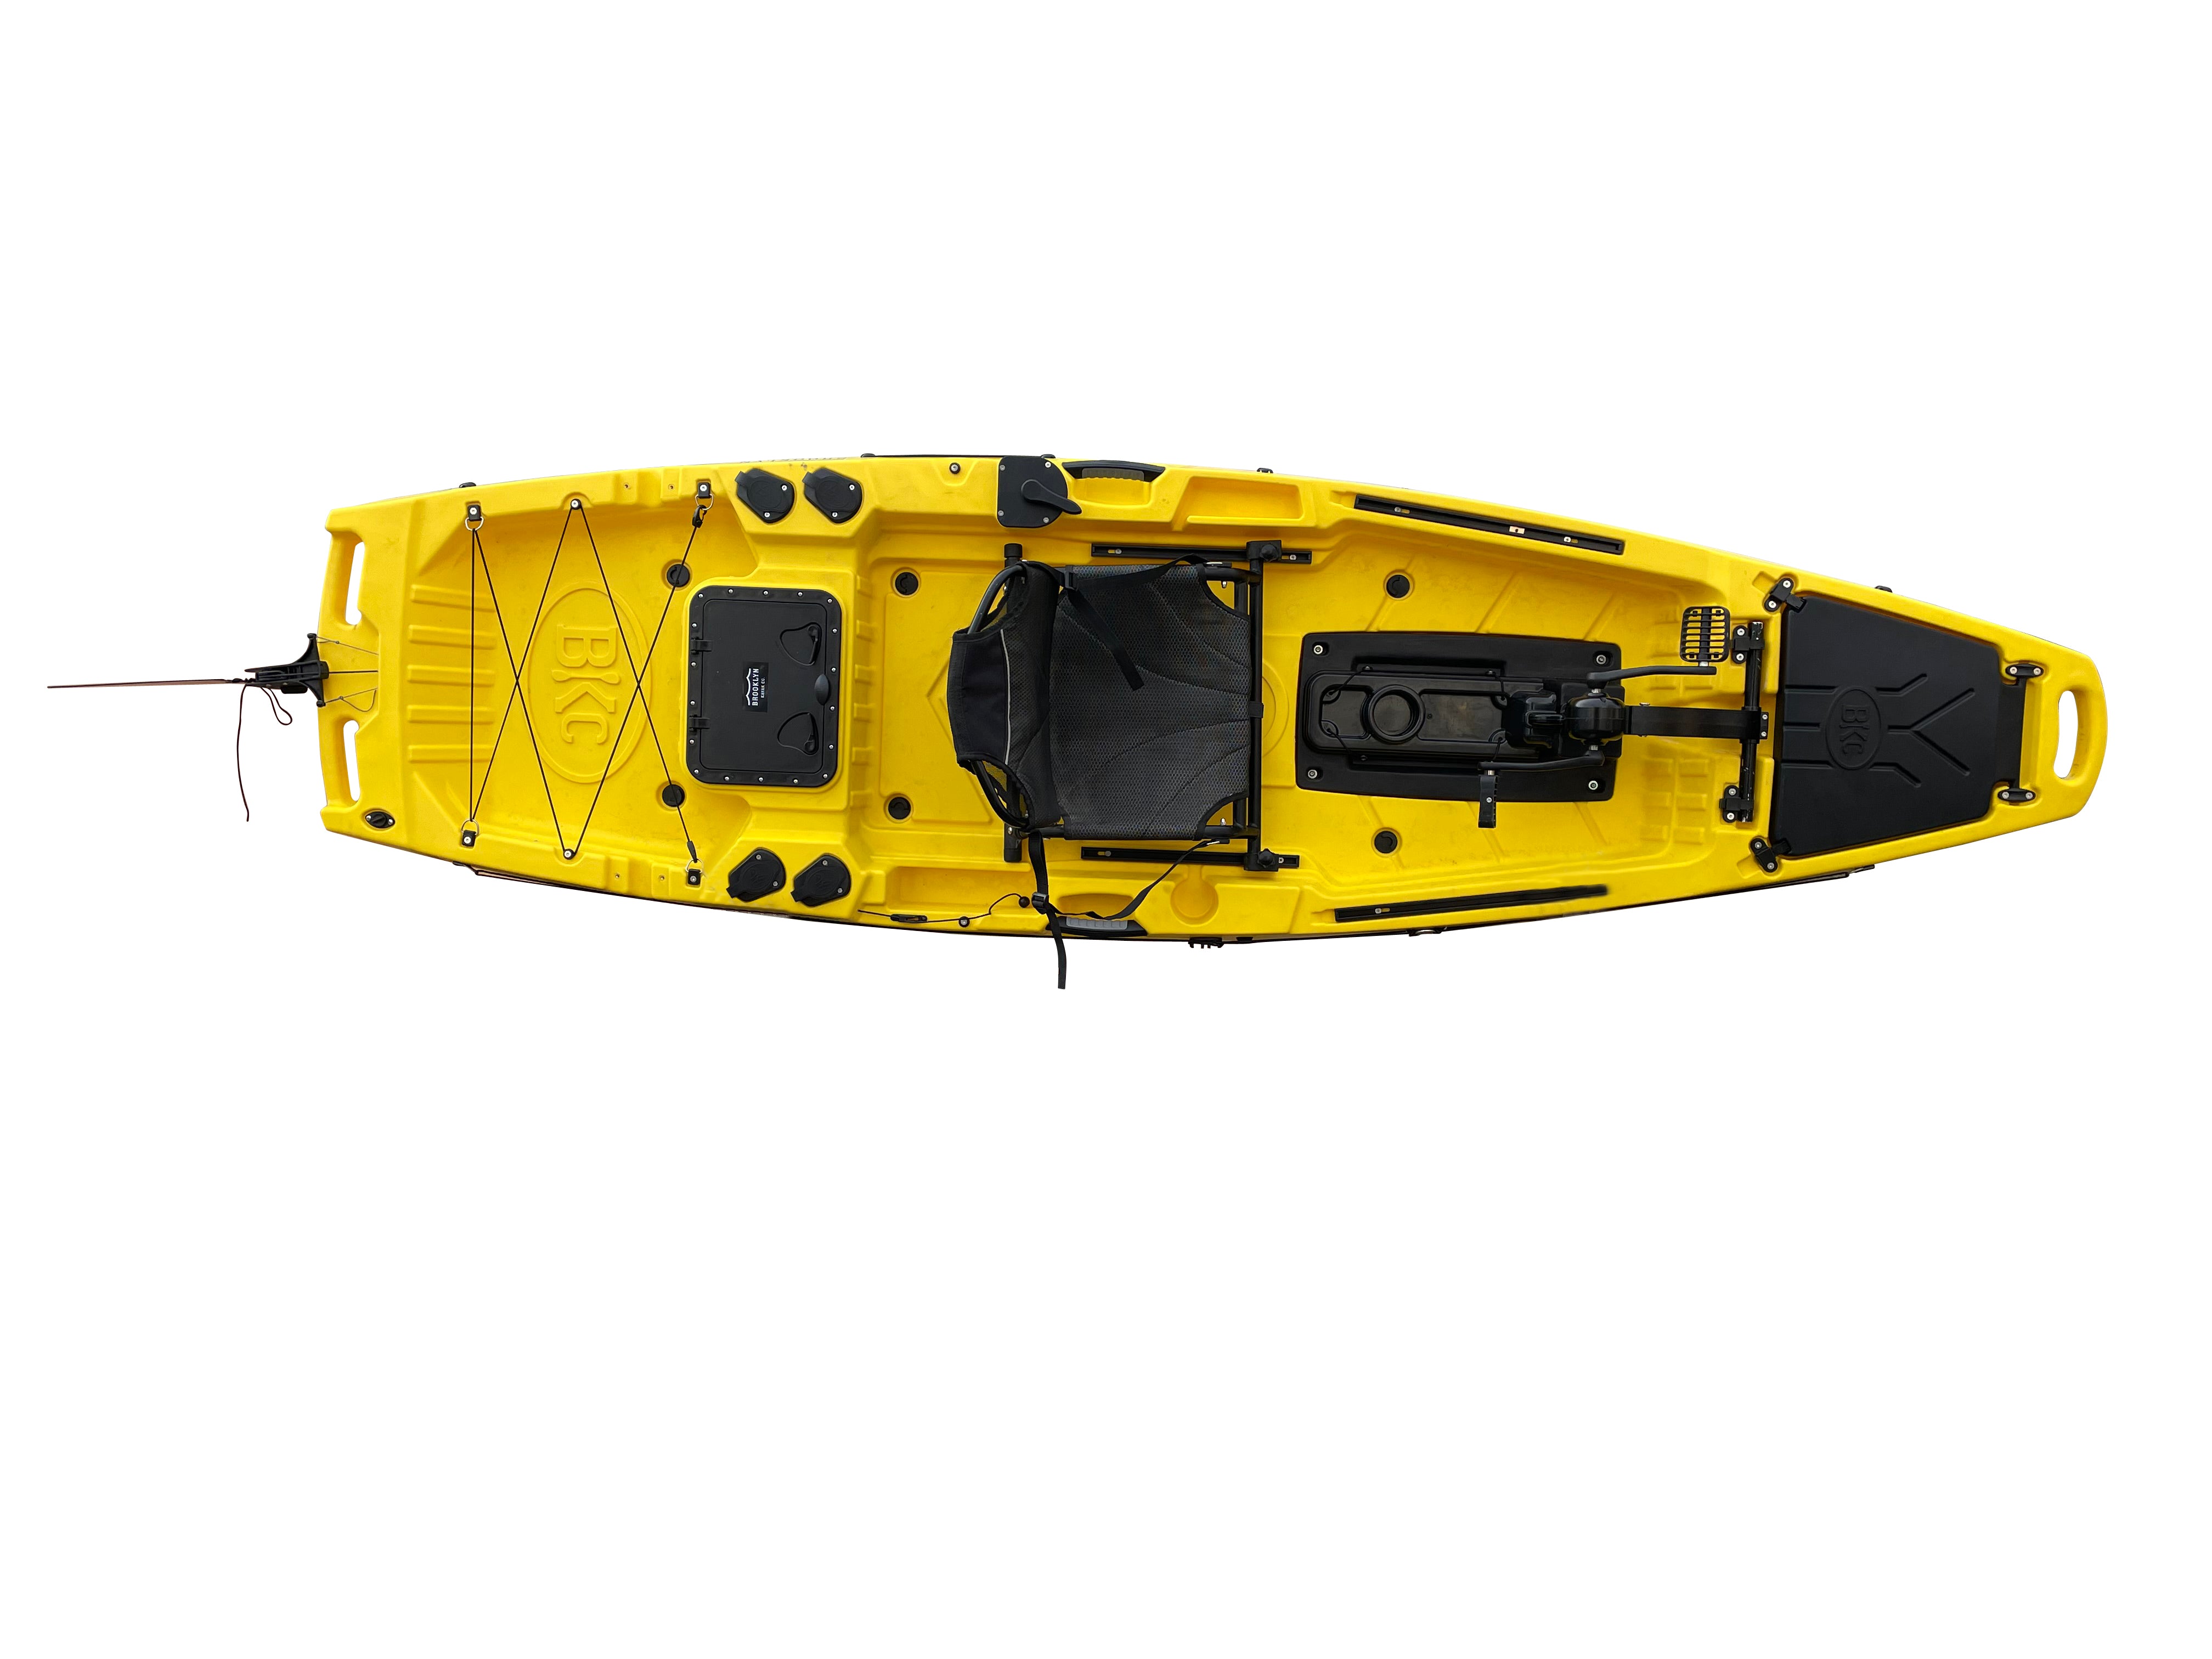 2023 Single Sit On Fishing Kayak,10 Ft Best Pedal Kayak Use